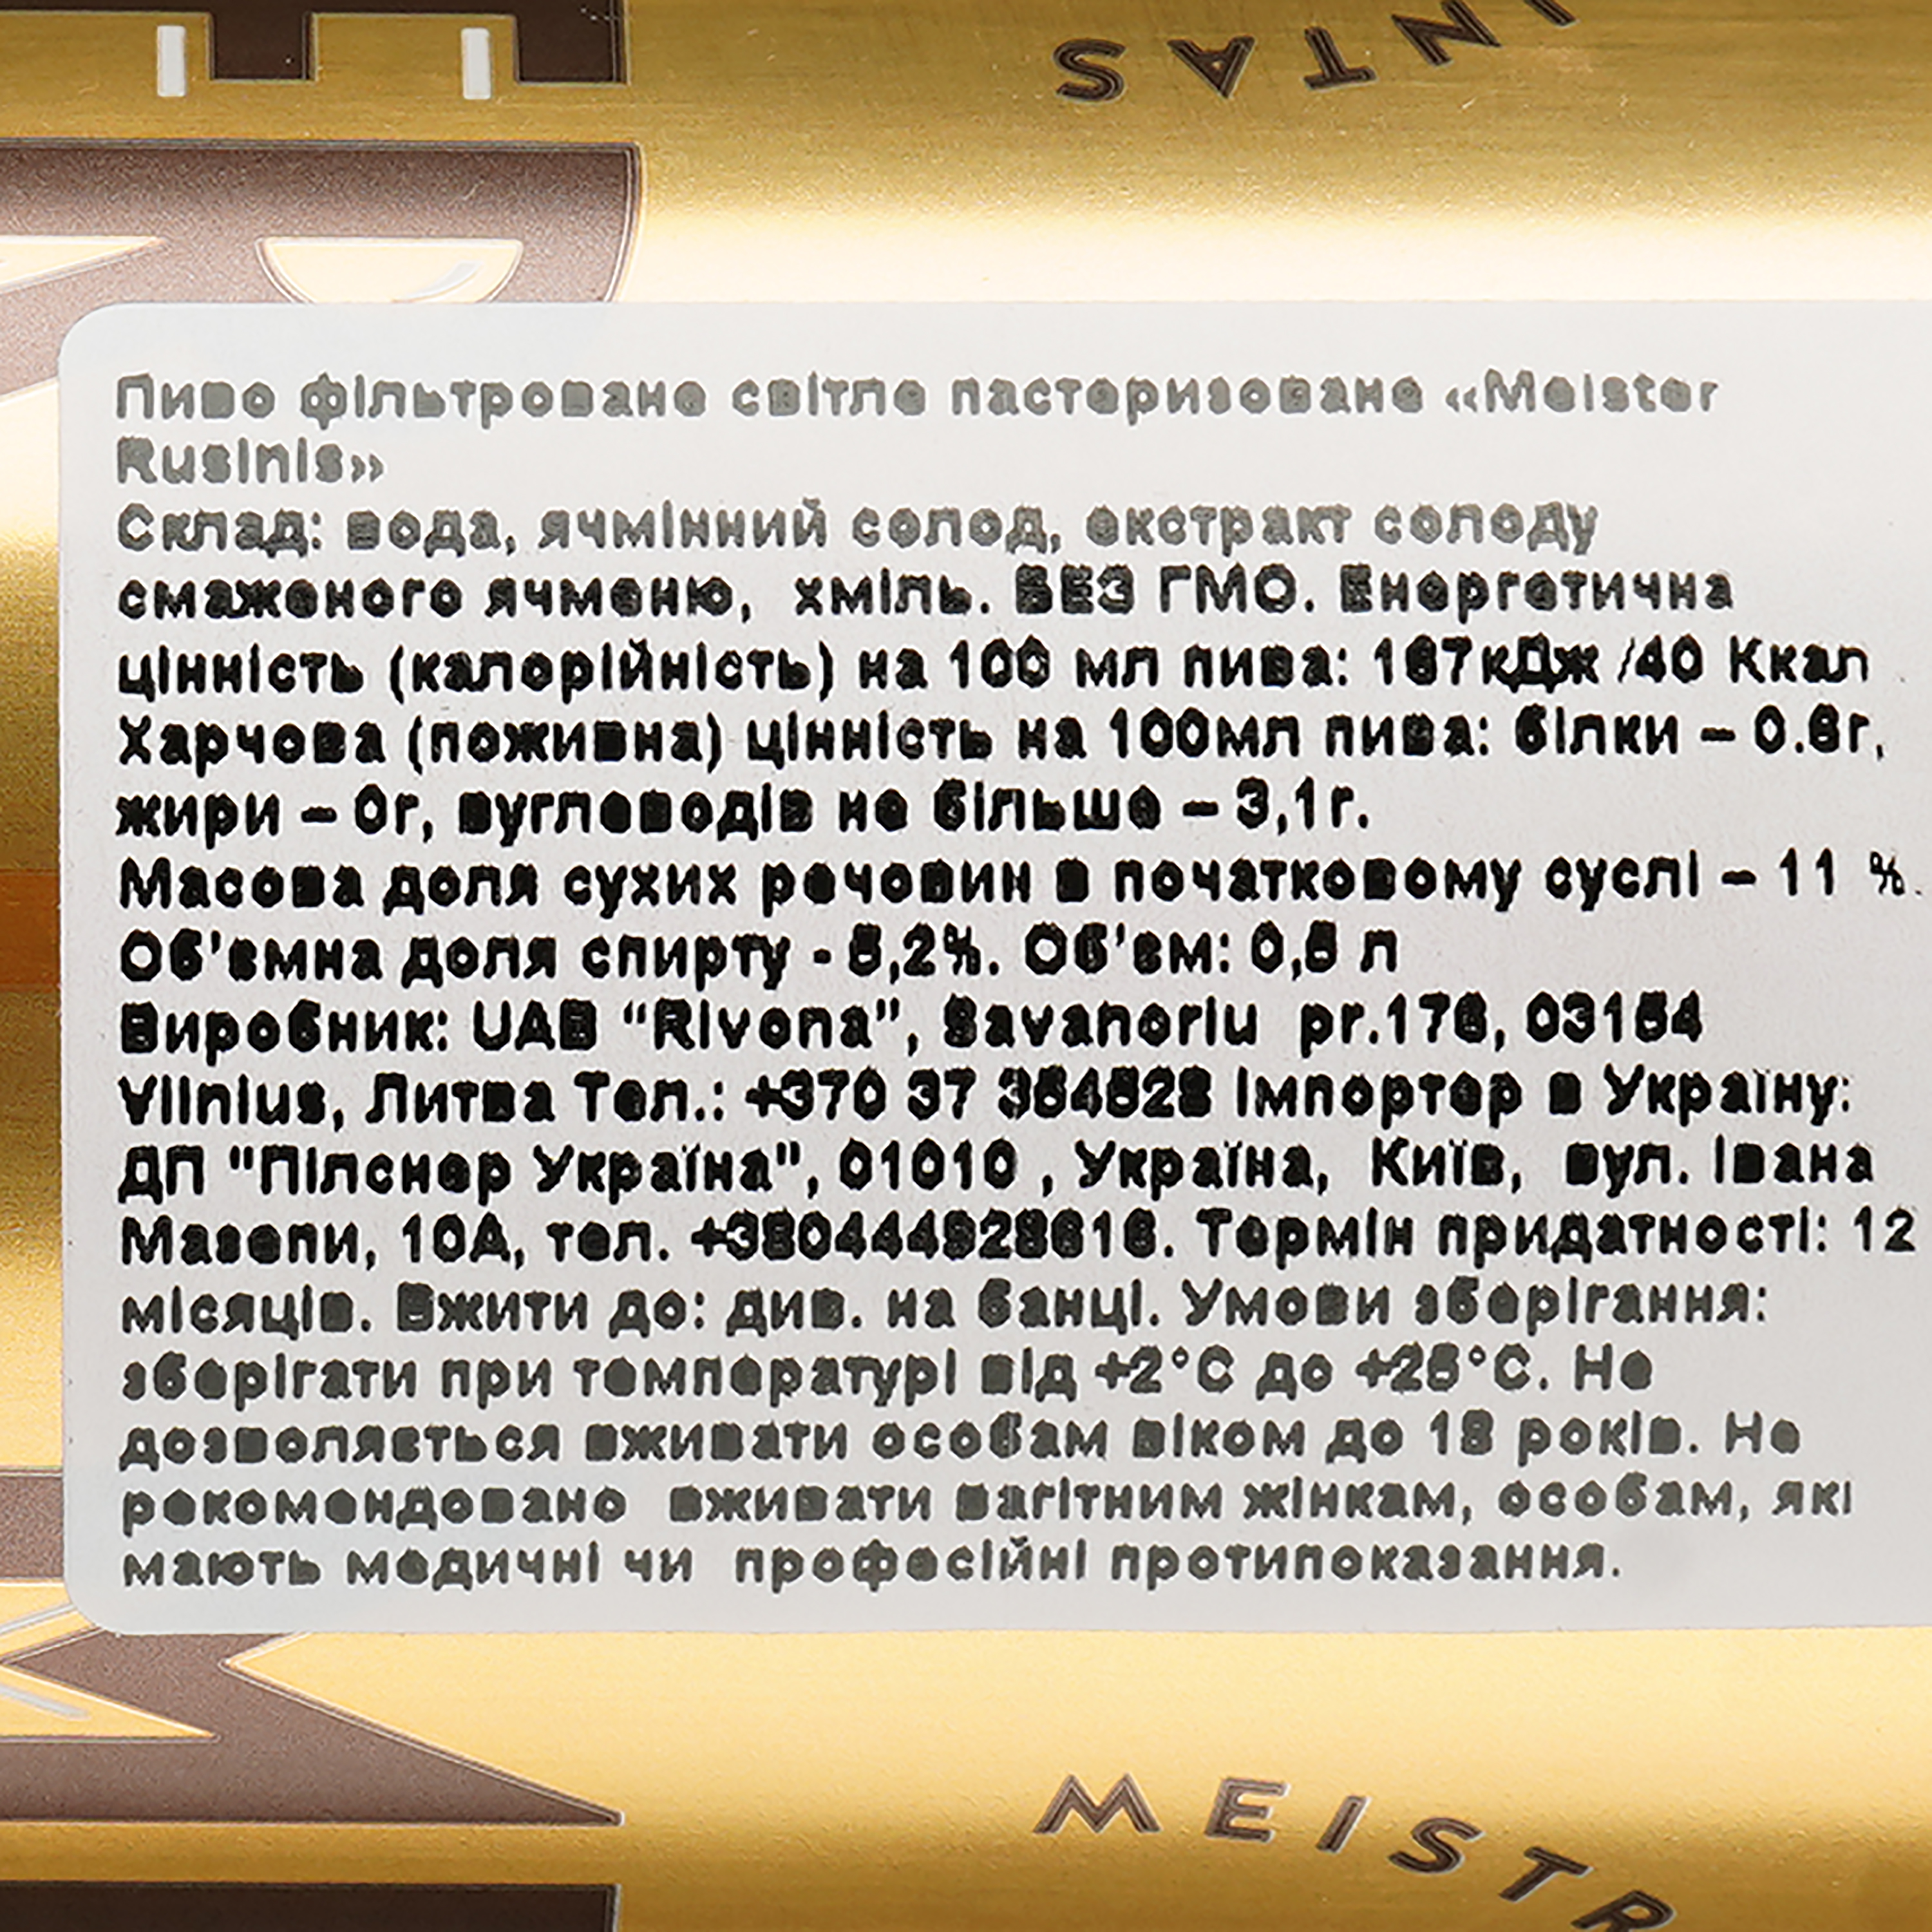 Пиво Meister Rusinis светлое, 5.2%, ж/б, 0.5 л - фото 3